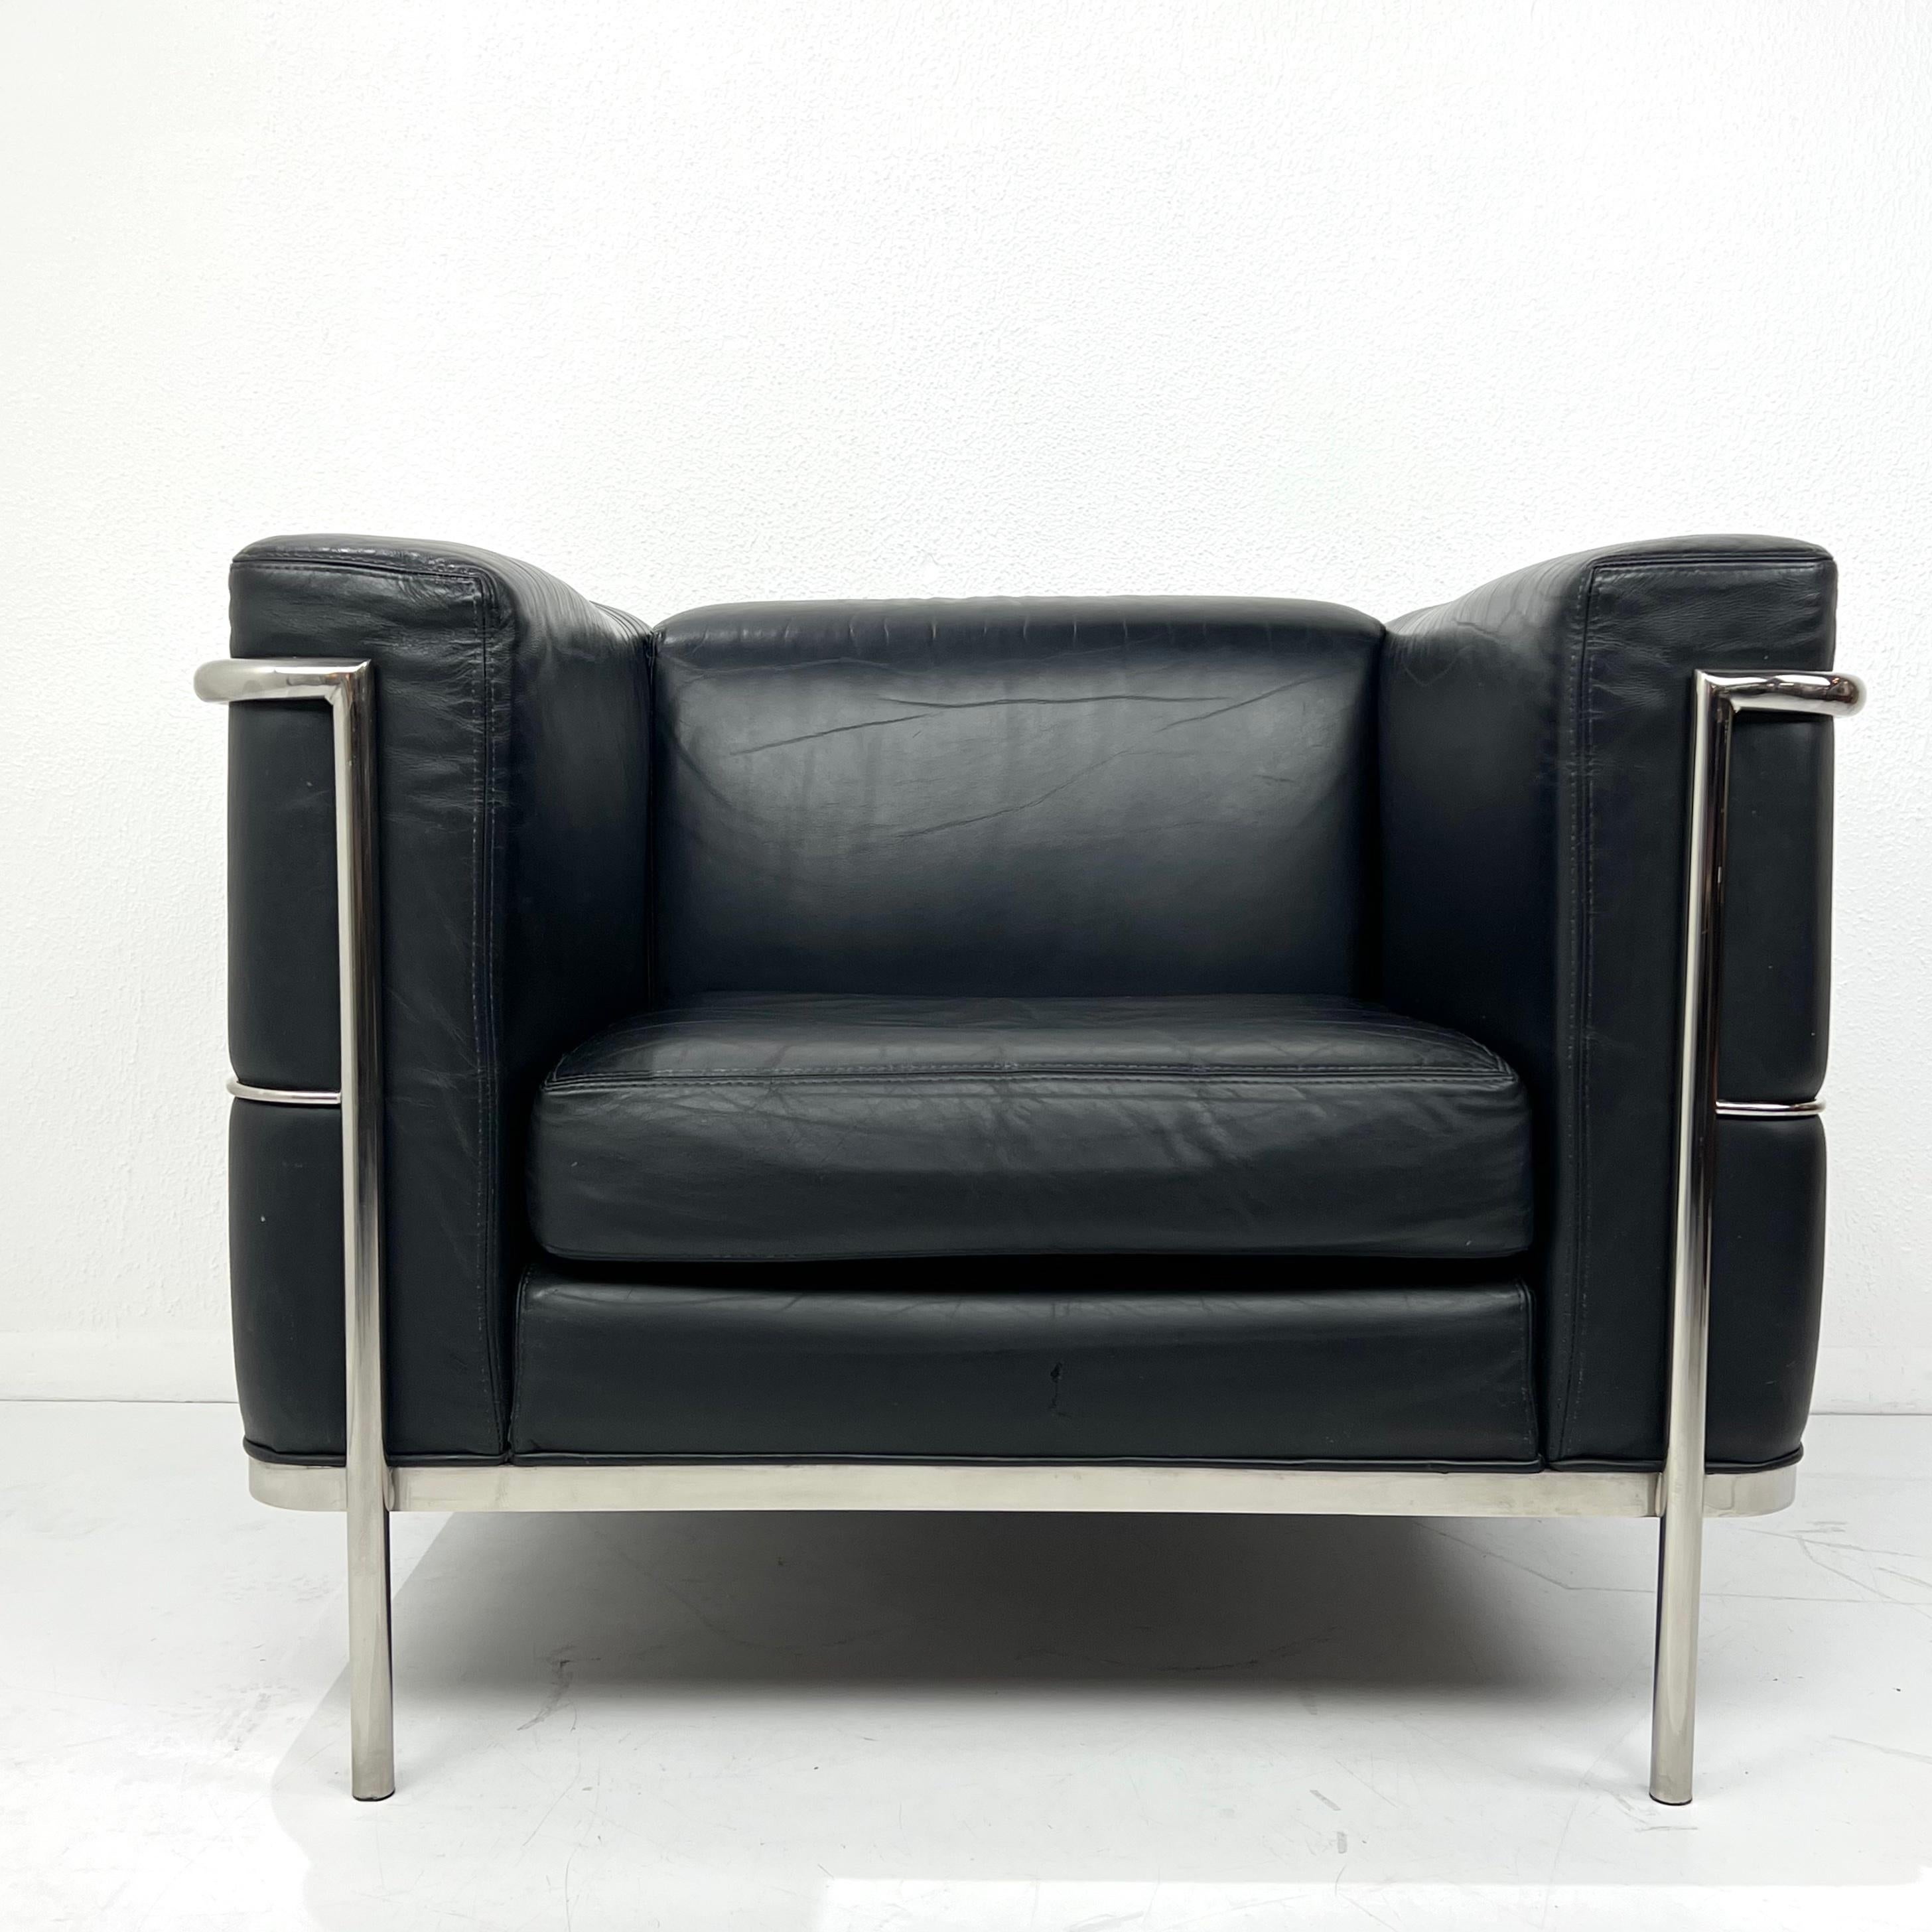 Schöner 20/123 Cube Club Chair von Jack Cartwright nach dem LC2 von Le Corbusier. Ausgestattet mit einem Gestell aus poliertem Stahlrohr und einer Polsterung aus schwarzem Leder. Guter Vintage-Zustand mit einigen alters- und gebrauchsbedingten